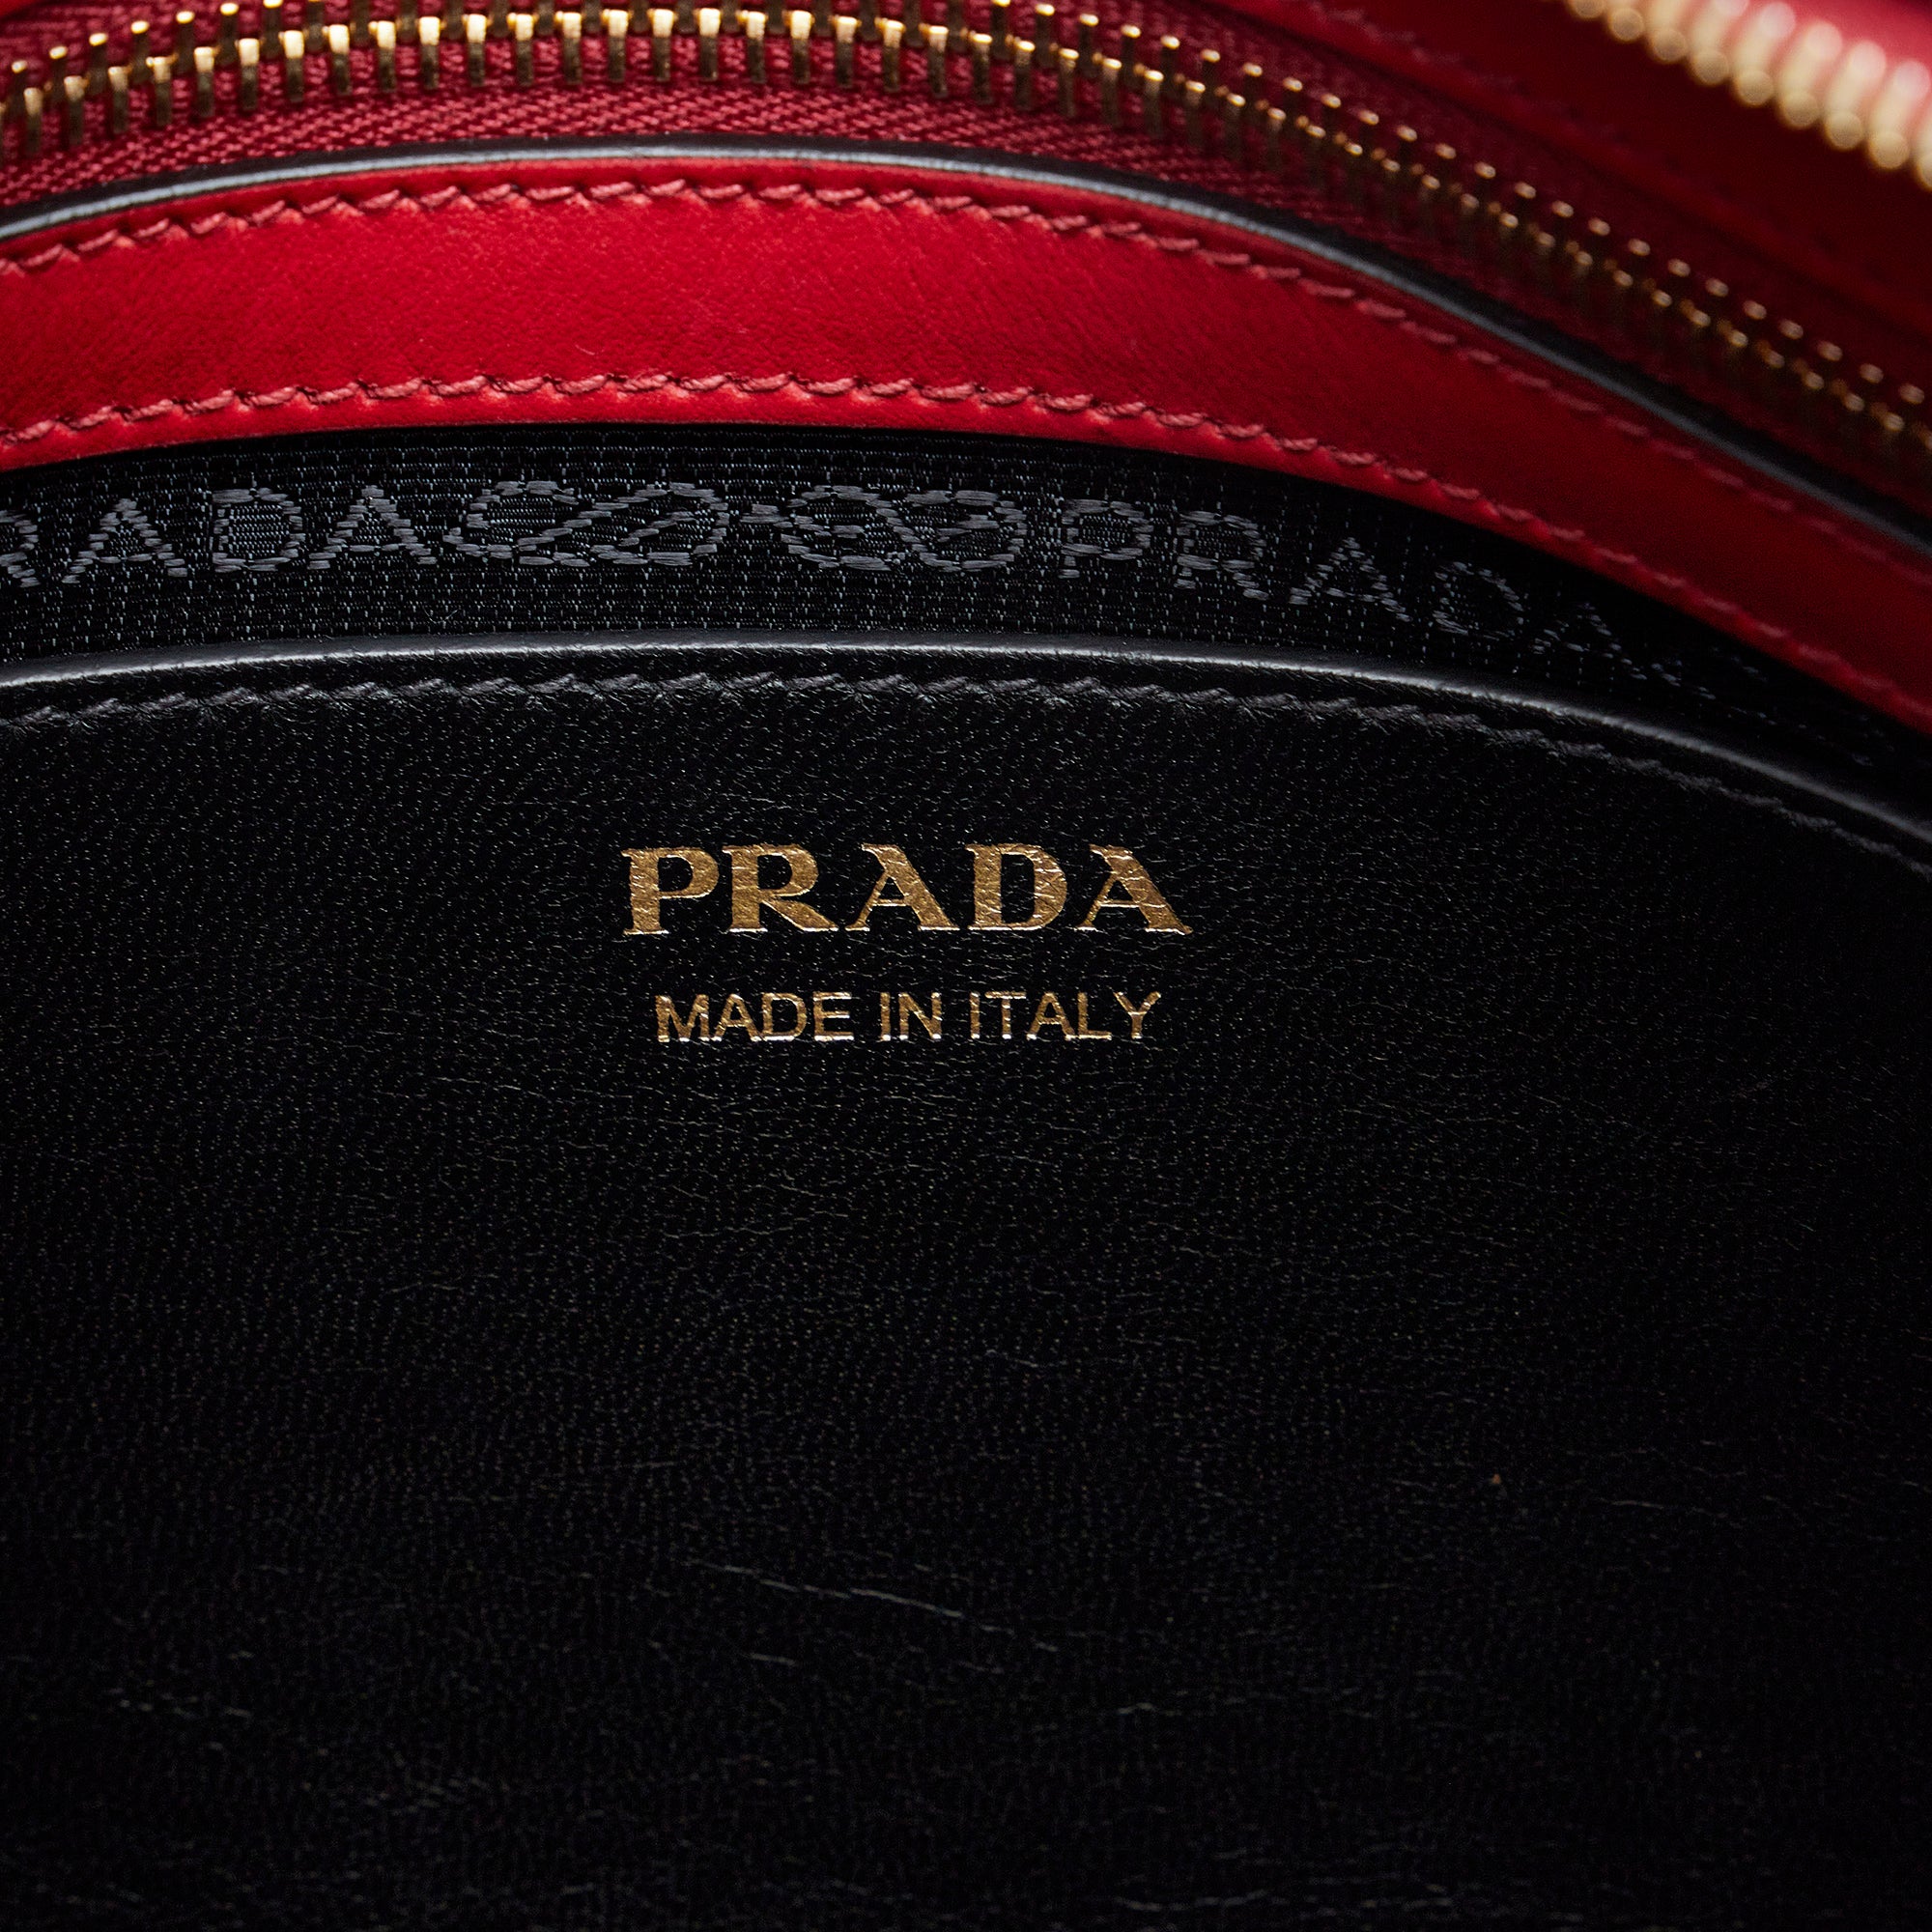 Prada Red/Black Saffiano and City Calf Leather Esplanade Tote Bag 1BA046 -  Yoogi's Closet